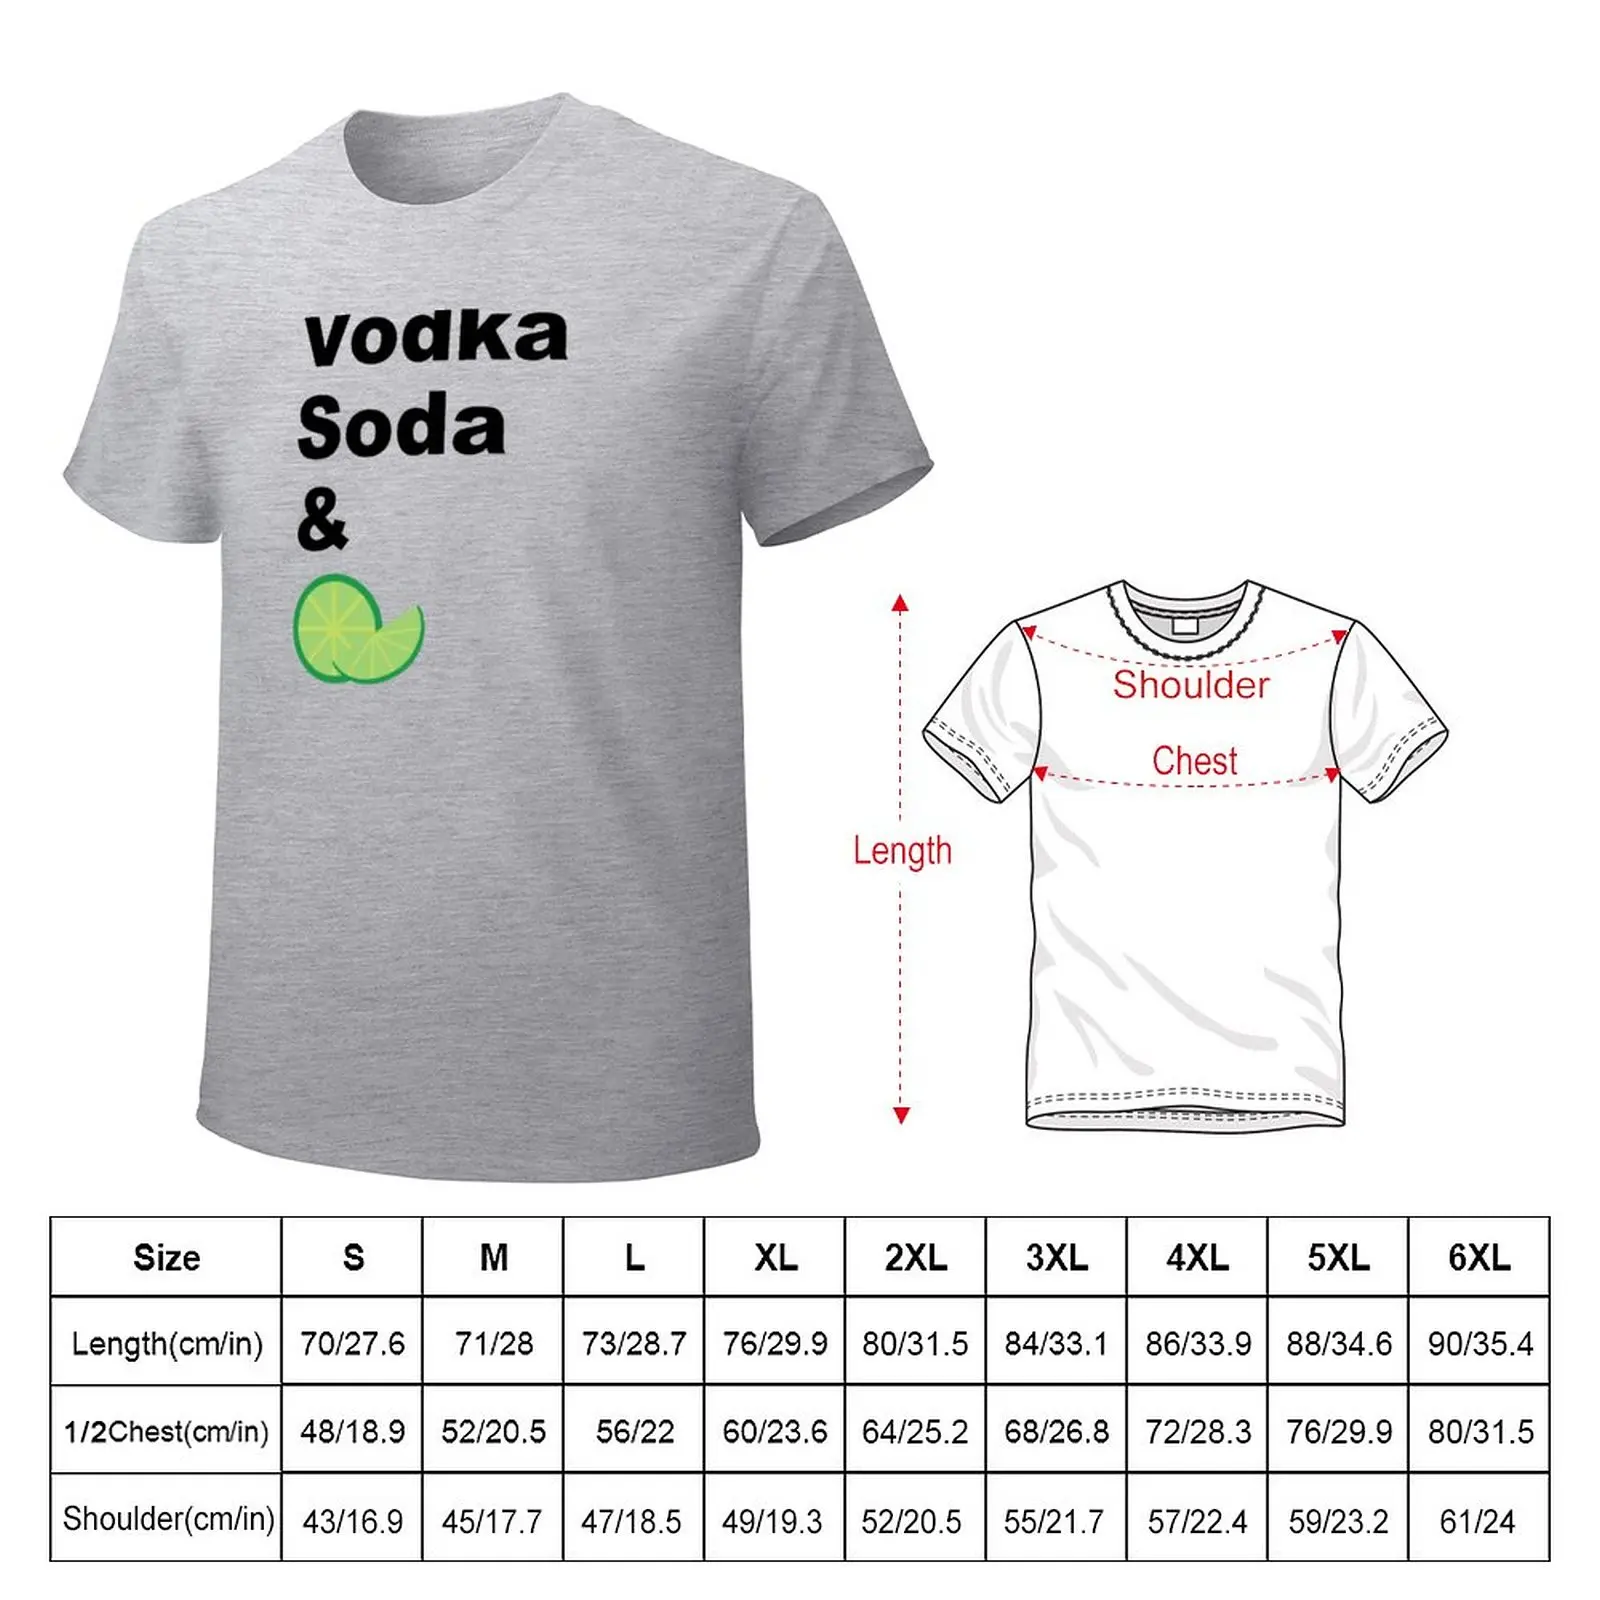 Футболка с водкой, содовой и лаймом, милые футболки для мальчика, одежда для мужчин Изображение 1